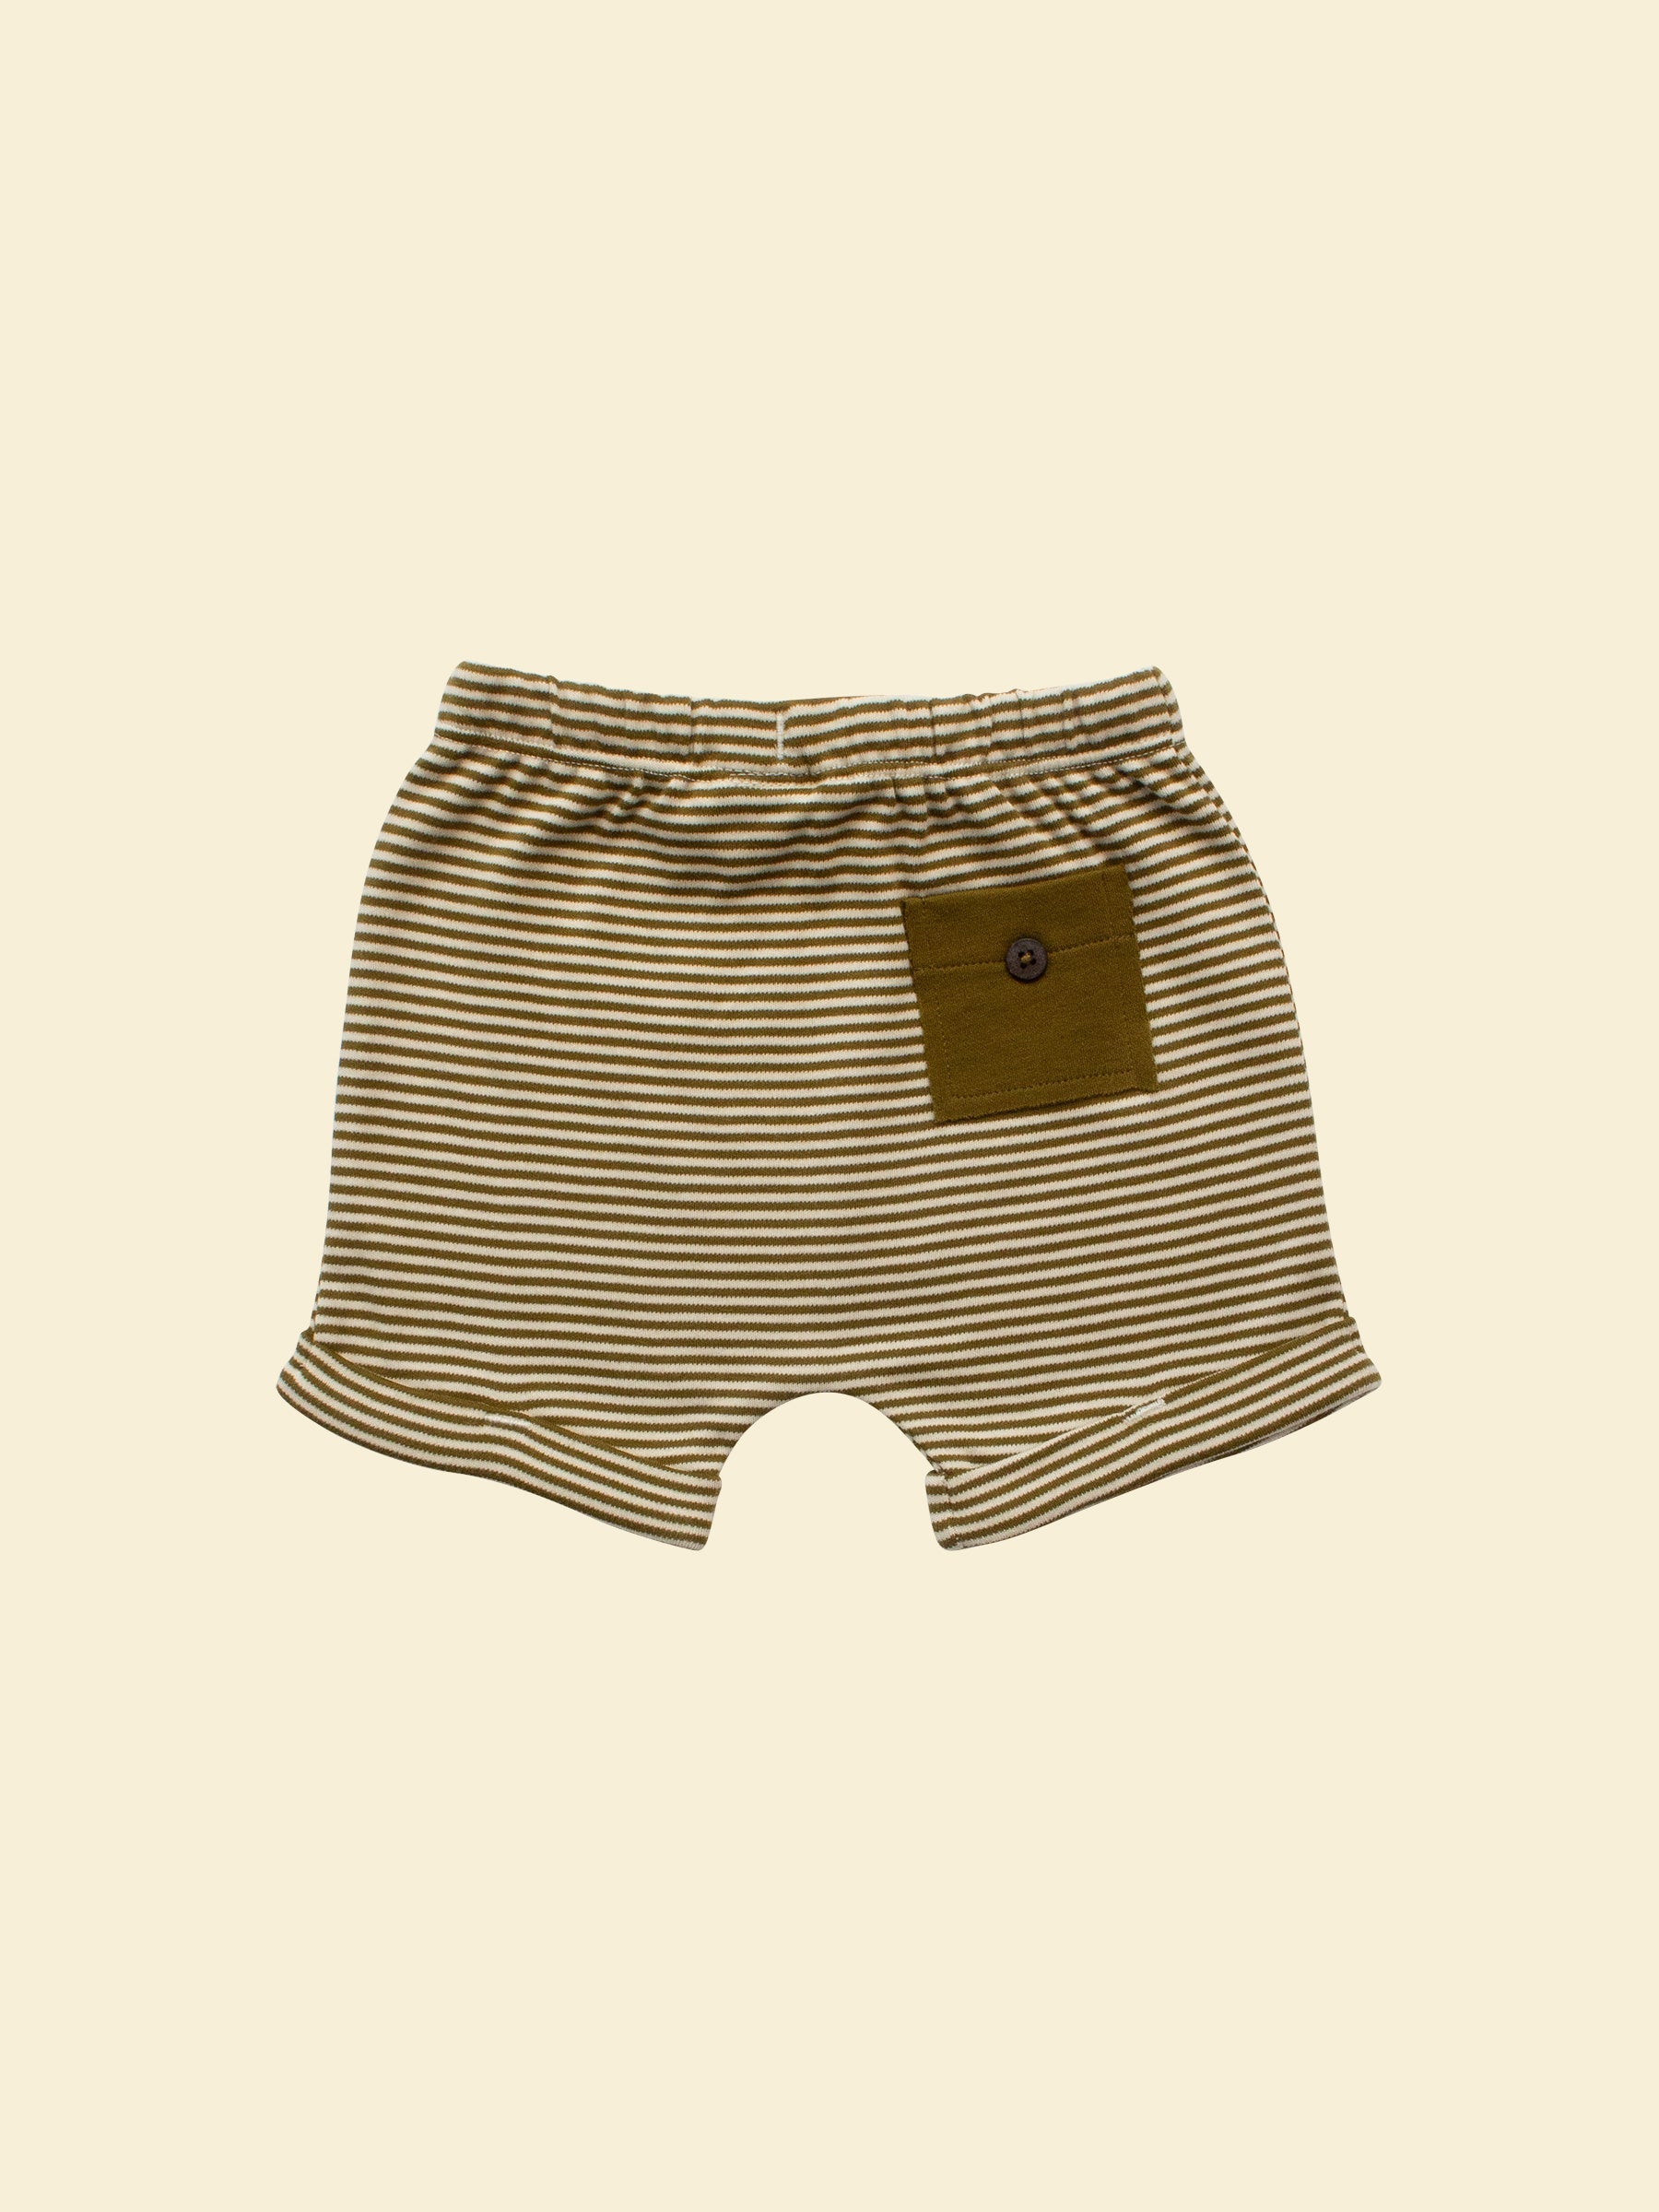 Shorts in Olive Stripe (Back)